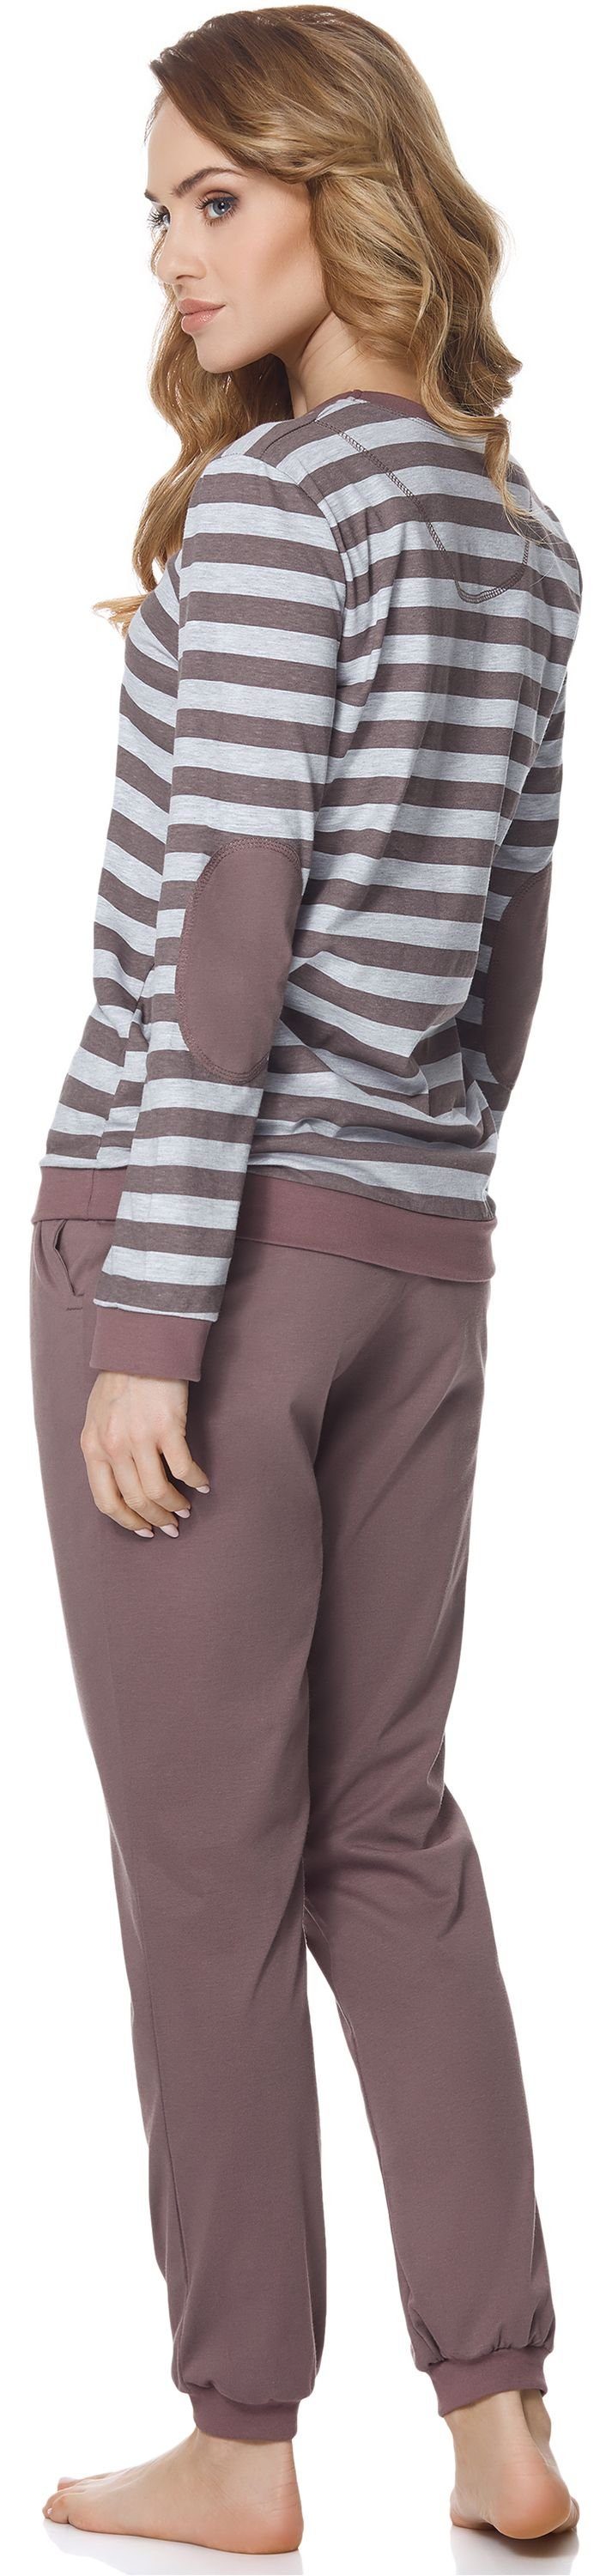 Schlafanzug MS10-107 Schlafanzug Style Merry Damen Violett/Melange